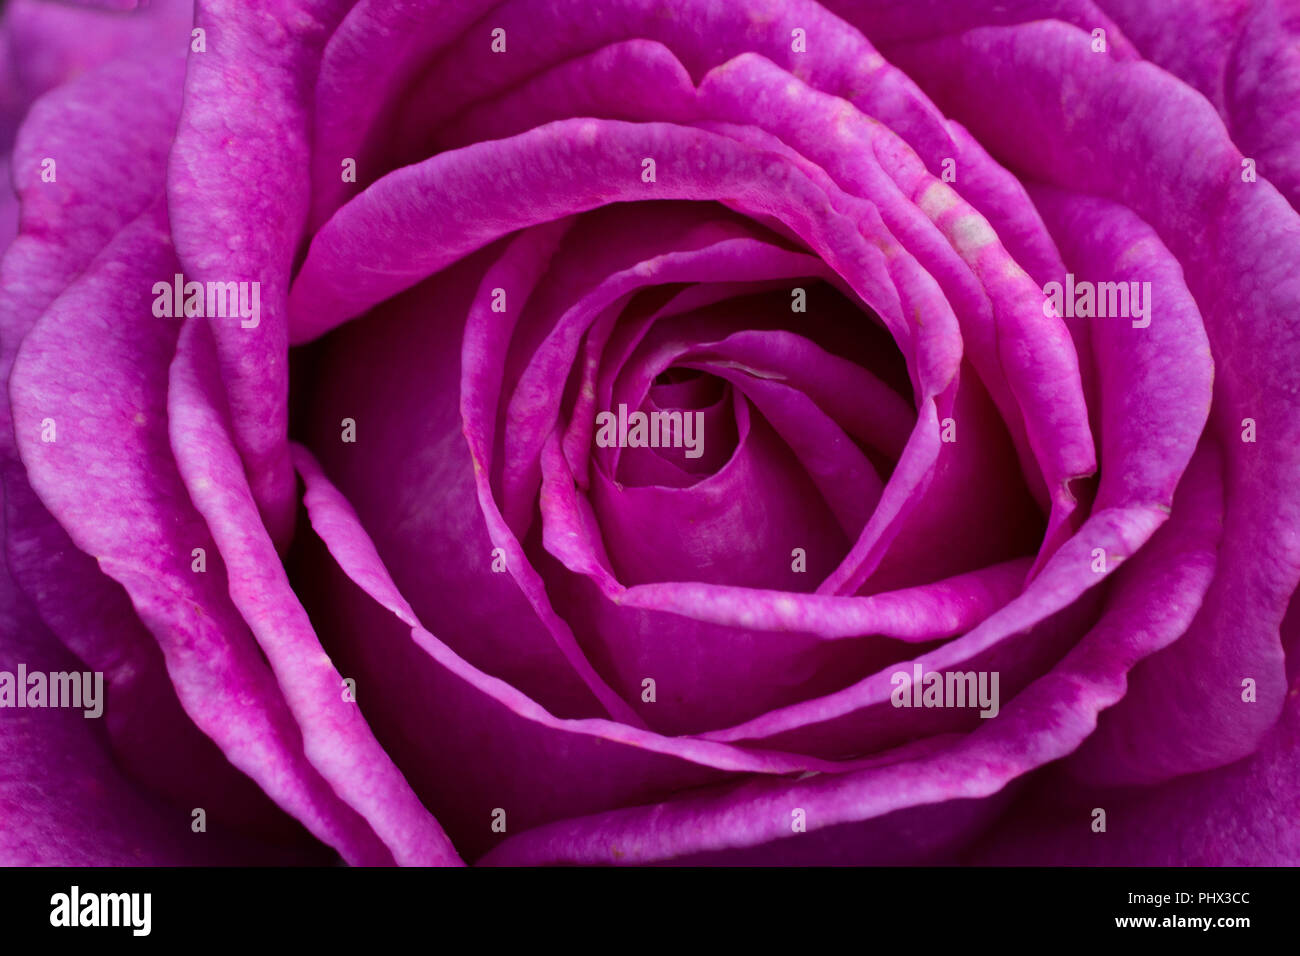 Un close up image d'une fleur rose mauve Photo Stock - Alamy